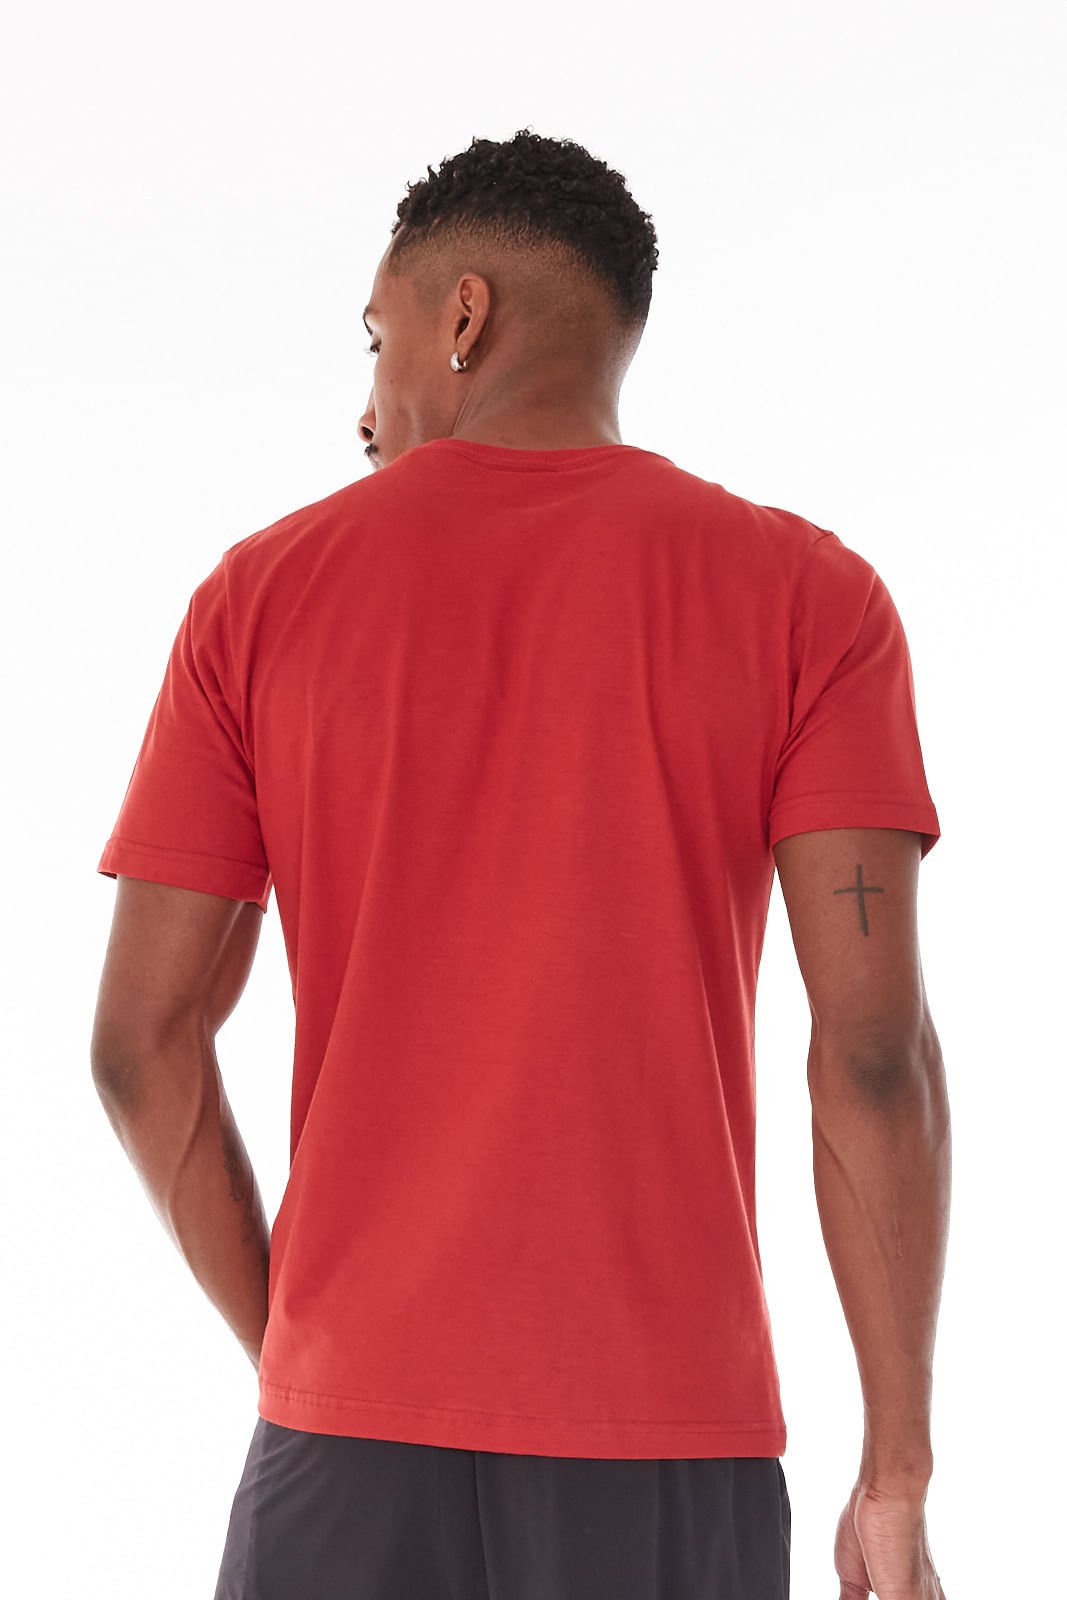 Camiseta Diadora Tonal Frieze Vermelha Vermelho 2